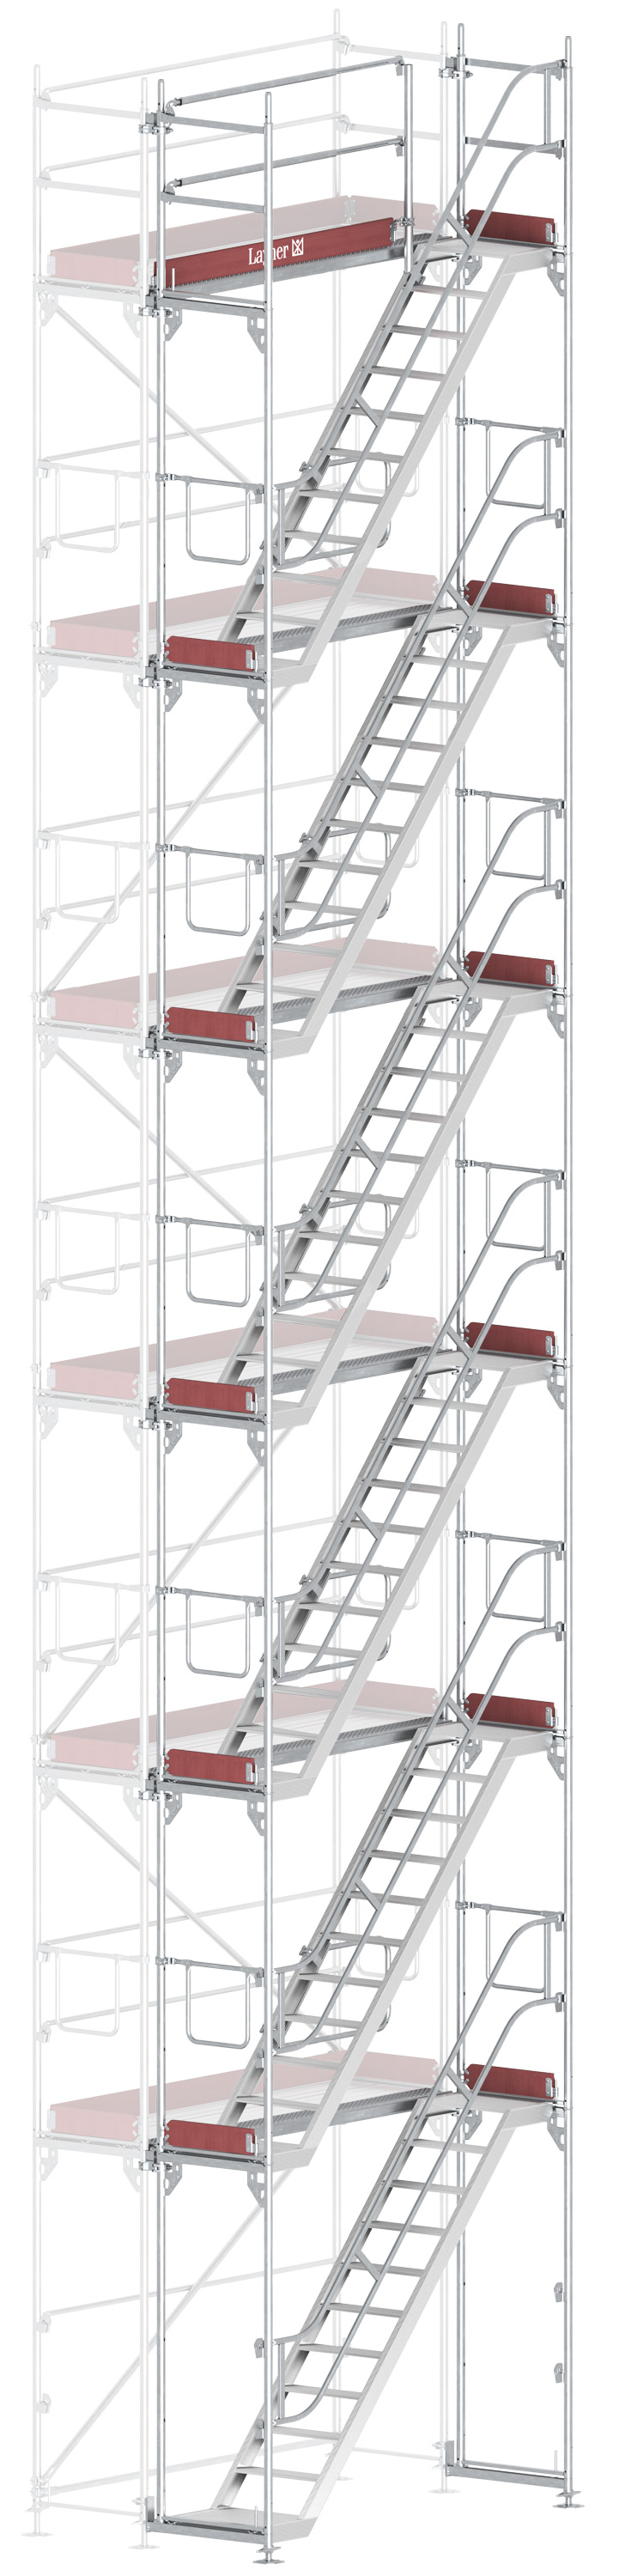 Layher Blitz Treppenturm-Vorbau Stahl - 2,57 x 12,20 m Erweiterung Treppenaufstieg nach TRBS 2121-2 für Layher Fassadengerüst (LG-1753-1200-VS) Bild-01